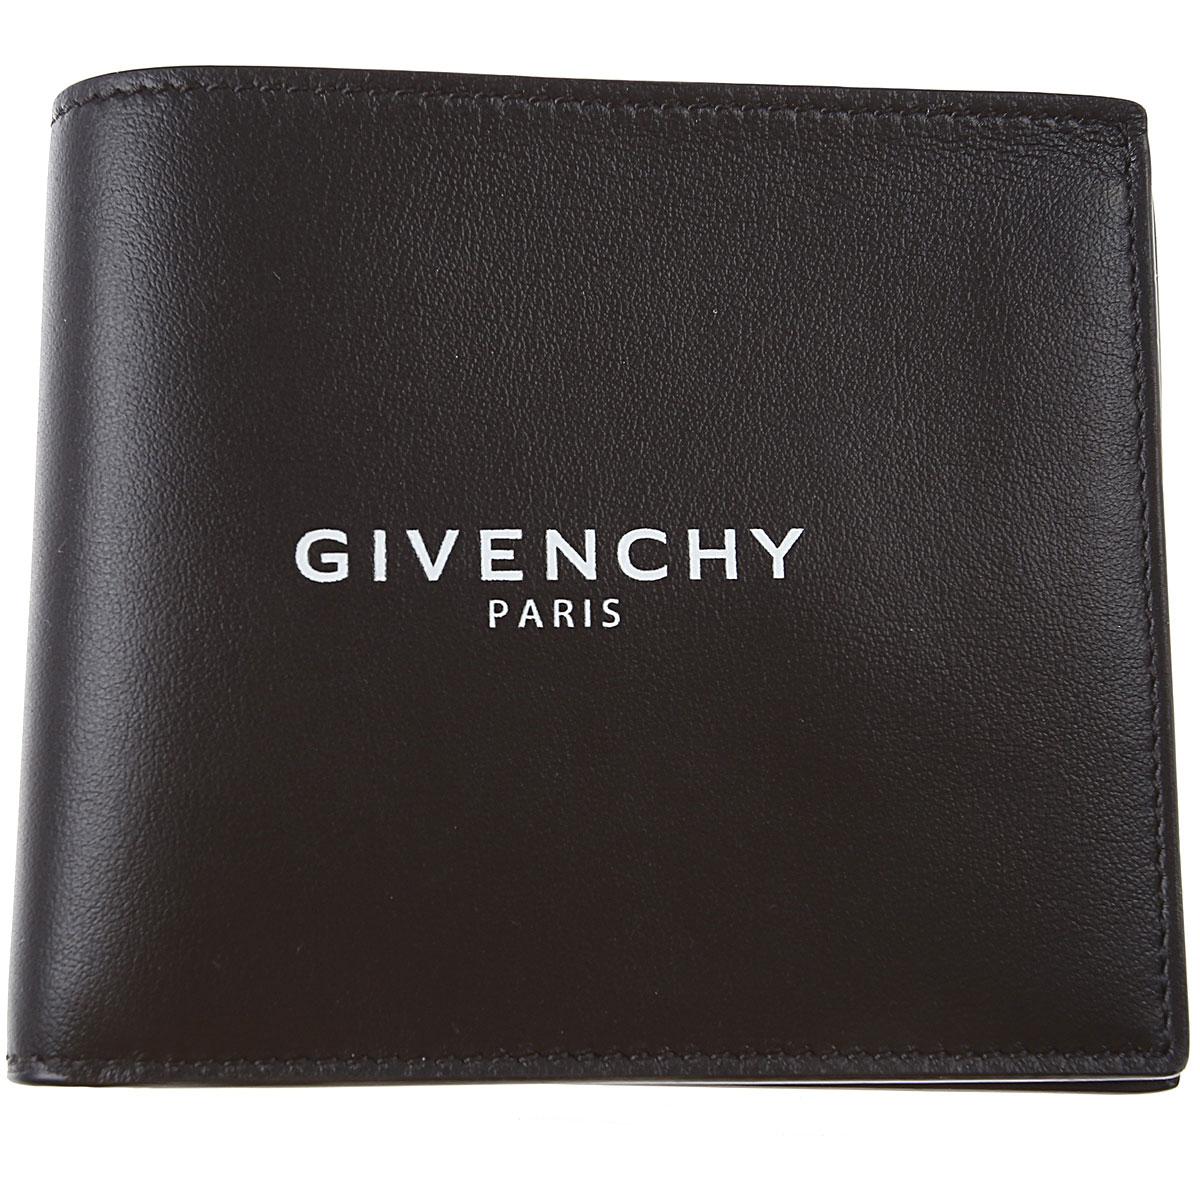 Givenchy Wallet For Men On Sale in Black for Men - Lyst